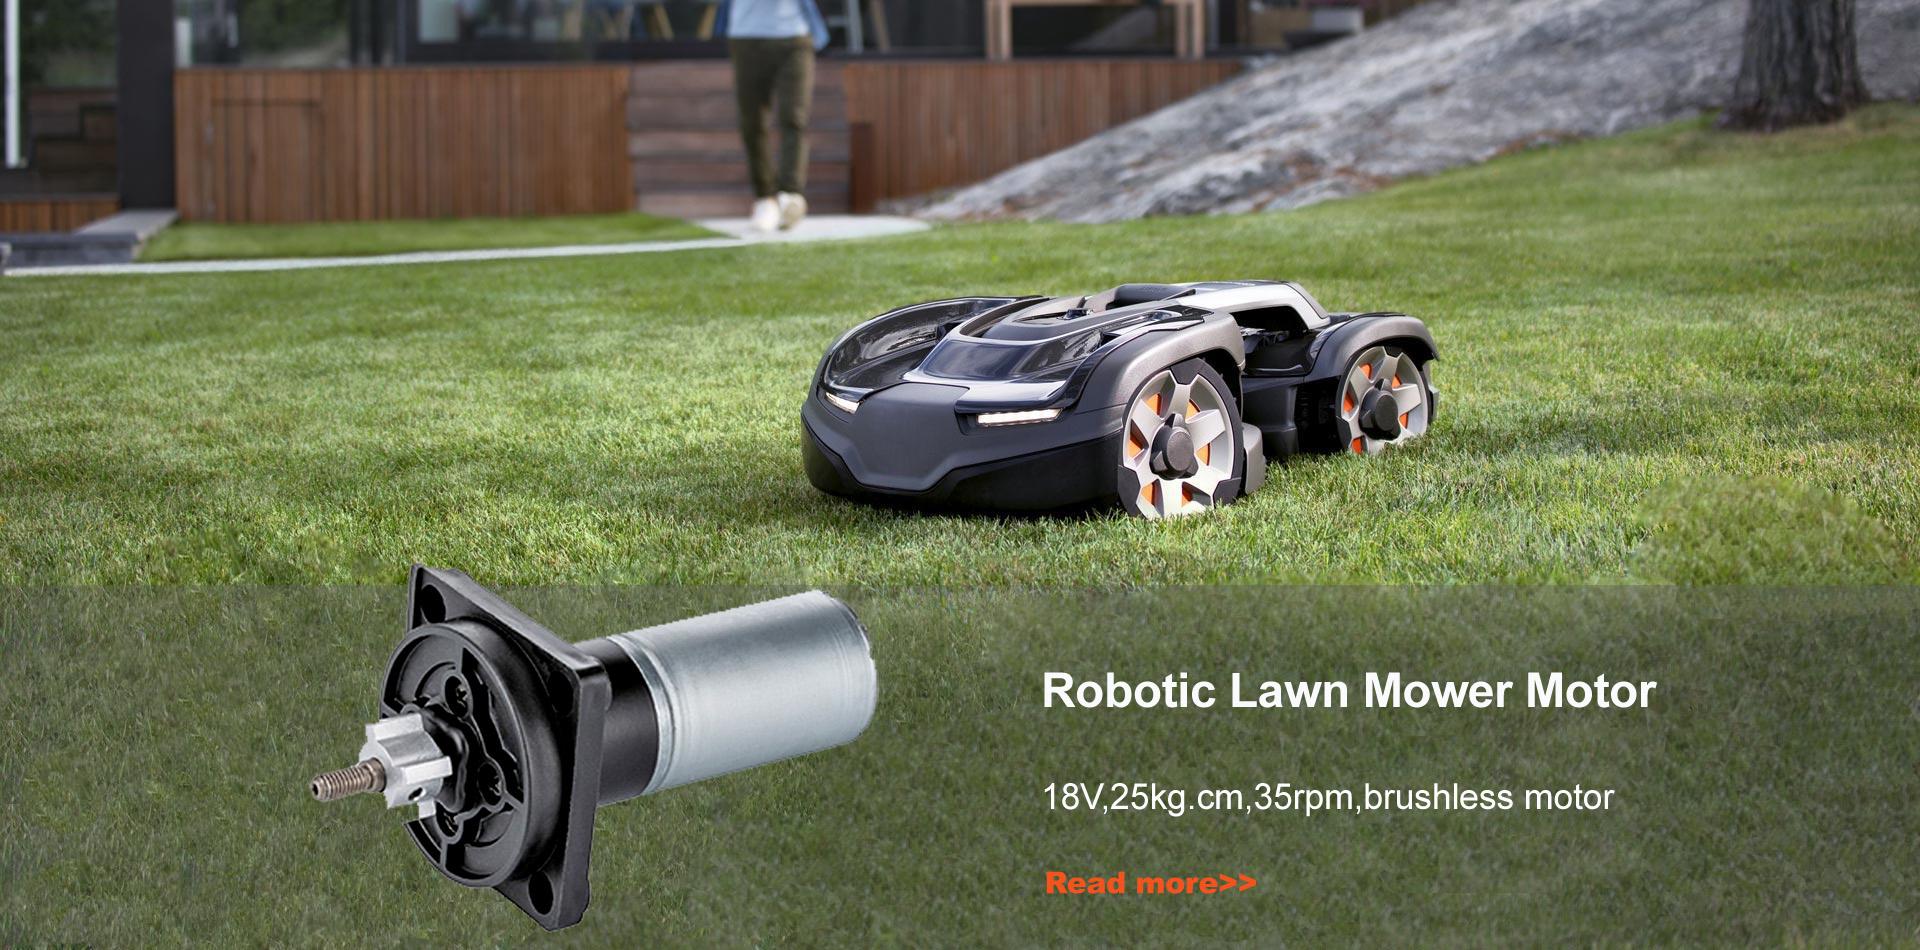 Robotic Lawn Mower Motor